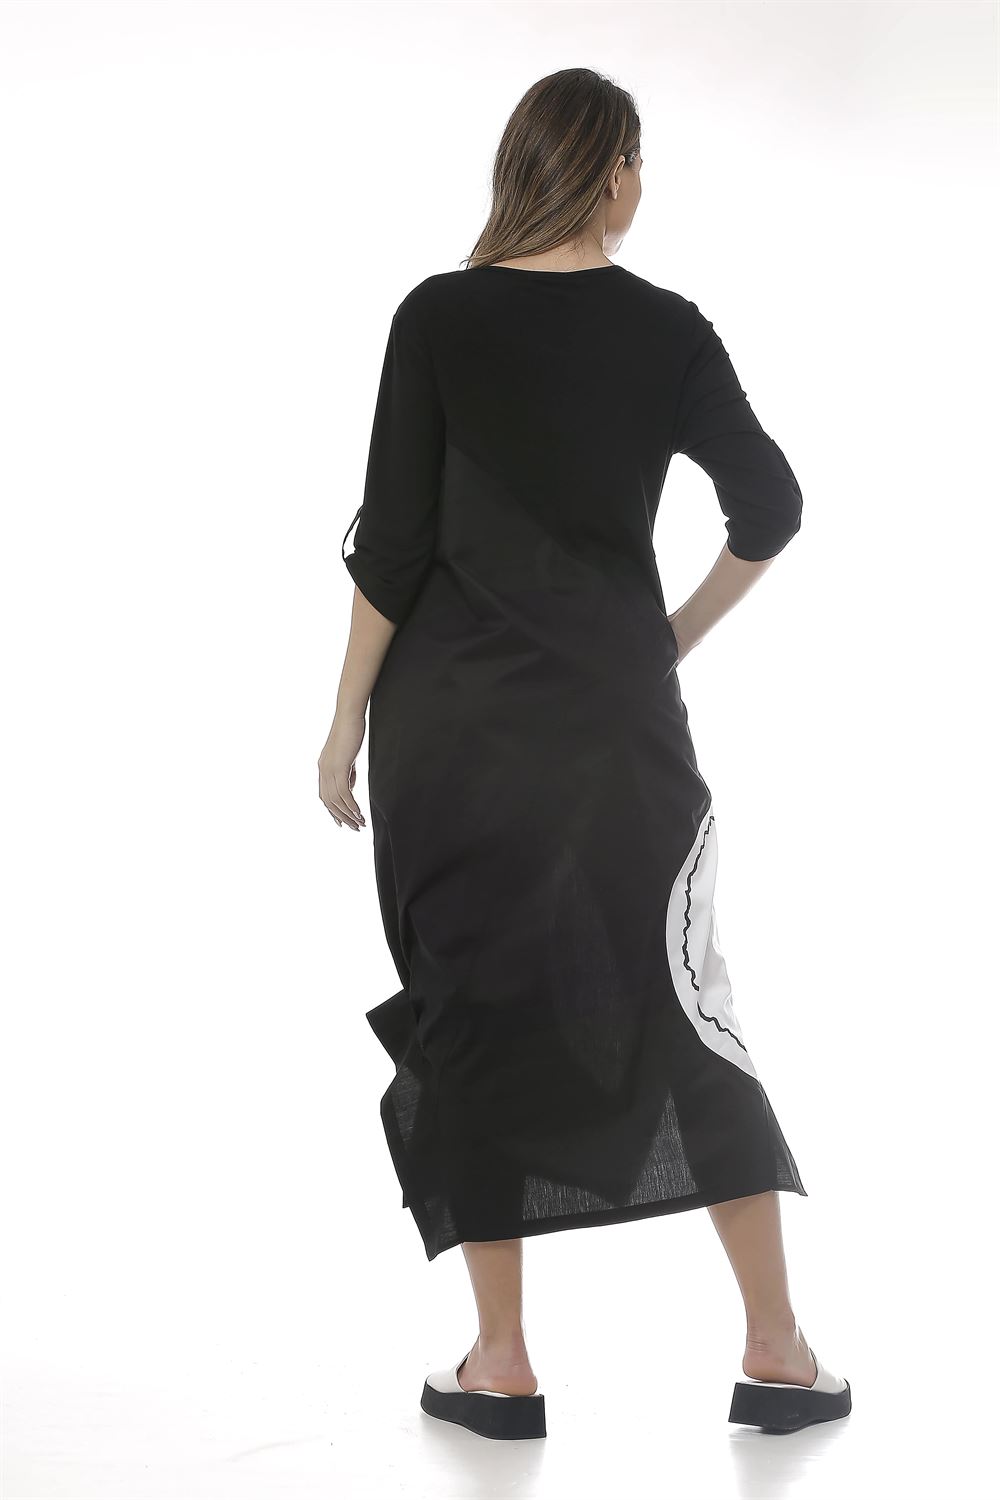 Garni Kumaş Detaylı Asimetrik Kesim Poplin Elbise-Siyah